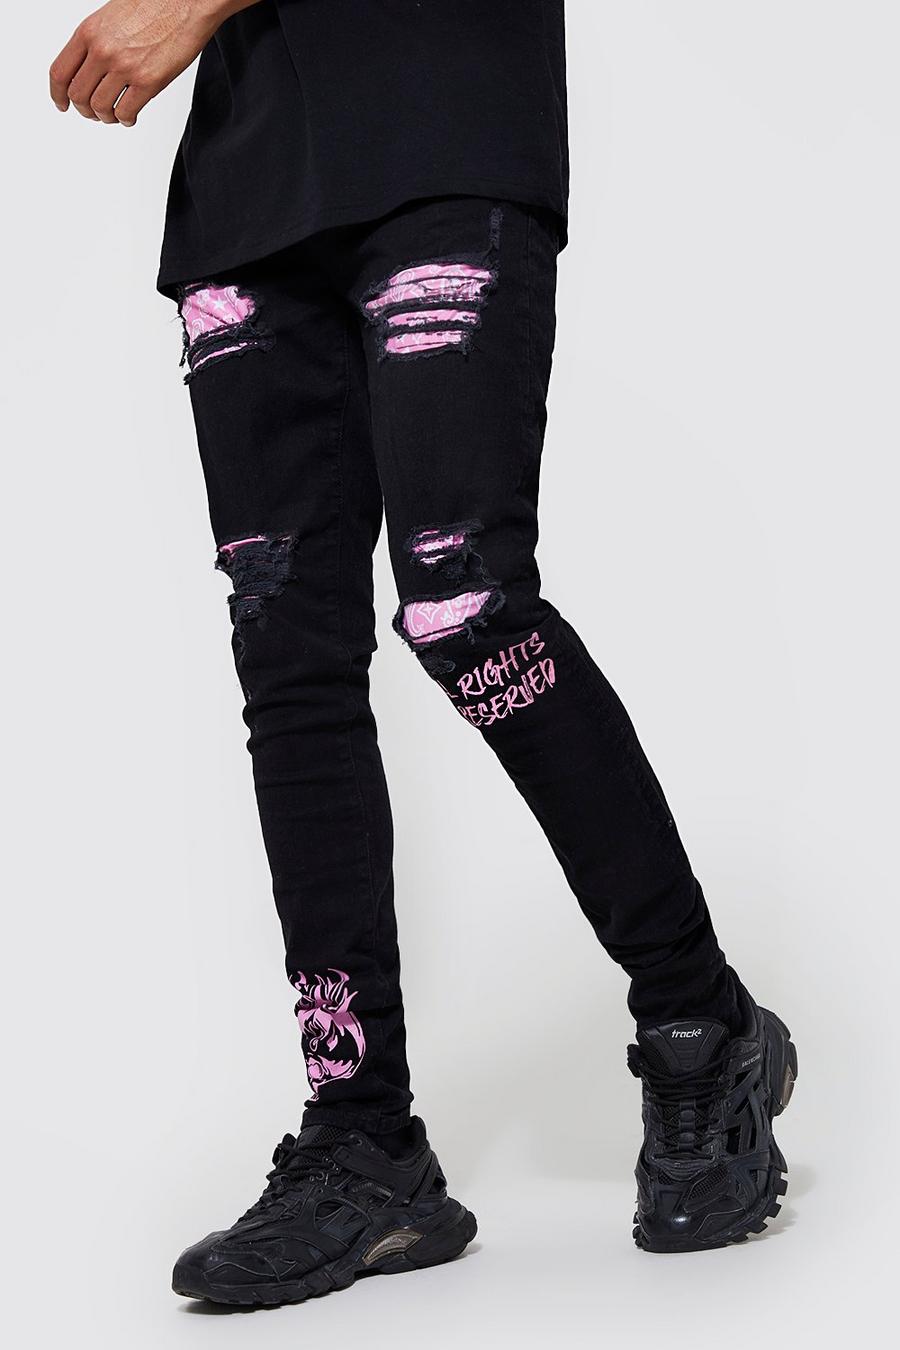 Jeans Tall Skinny Fit in fantasia a bandana stile Graffiti con strappi, Black nero